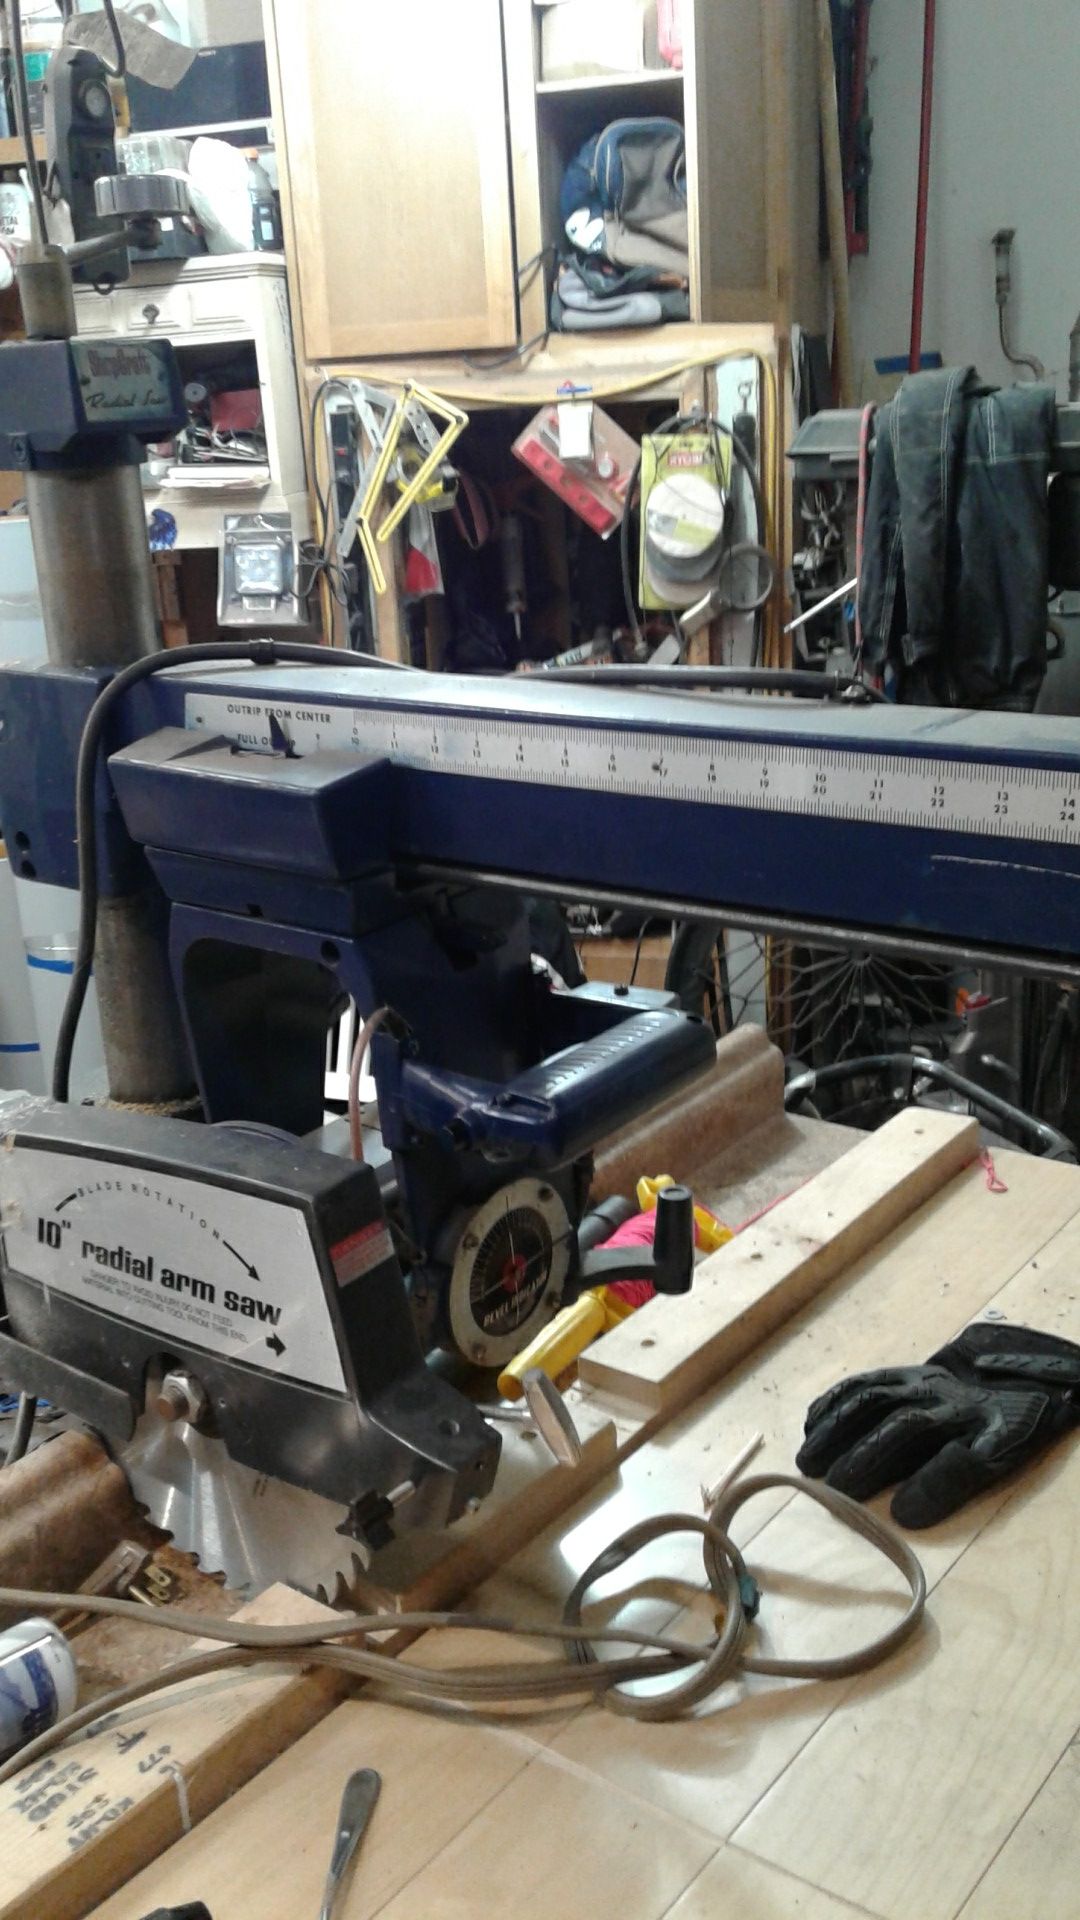 Craftsman SHOPCRAFT 10" radial arm saw